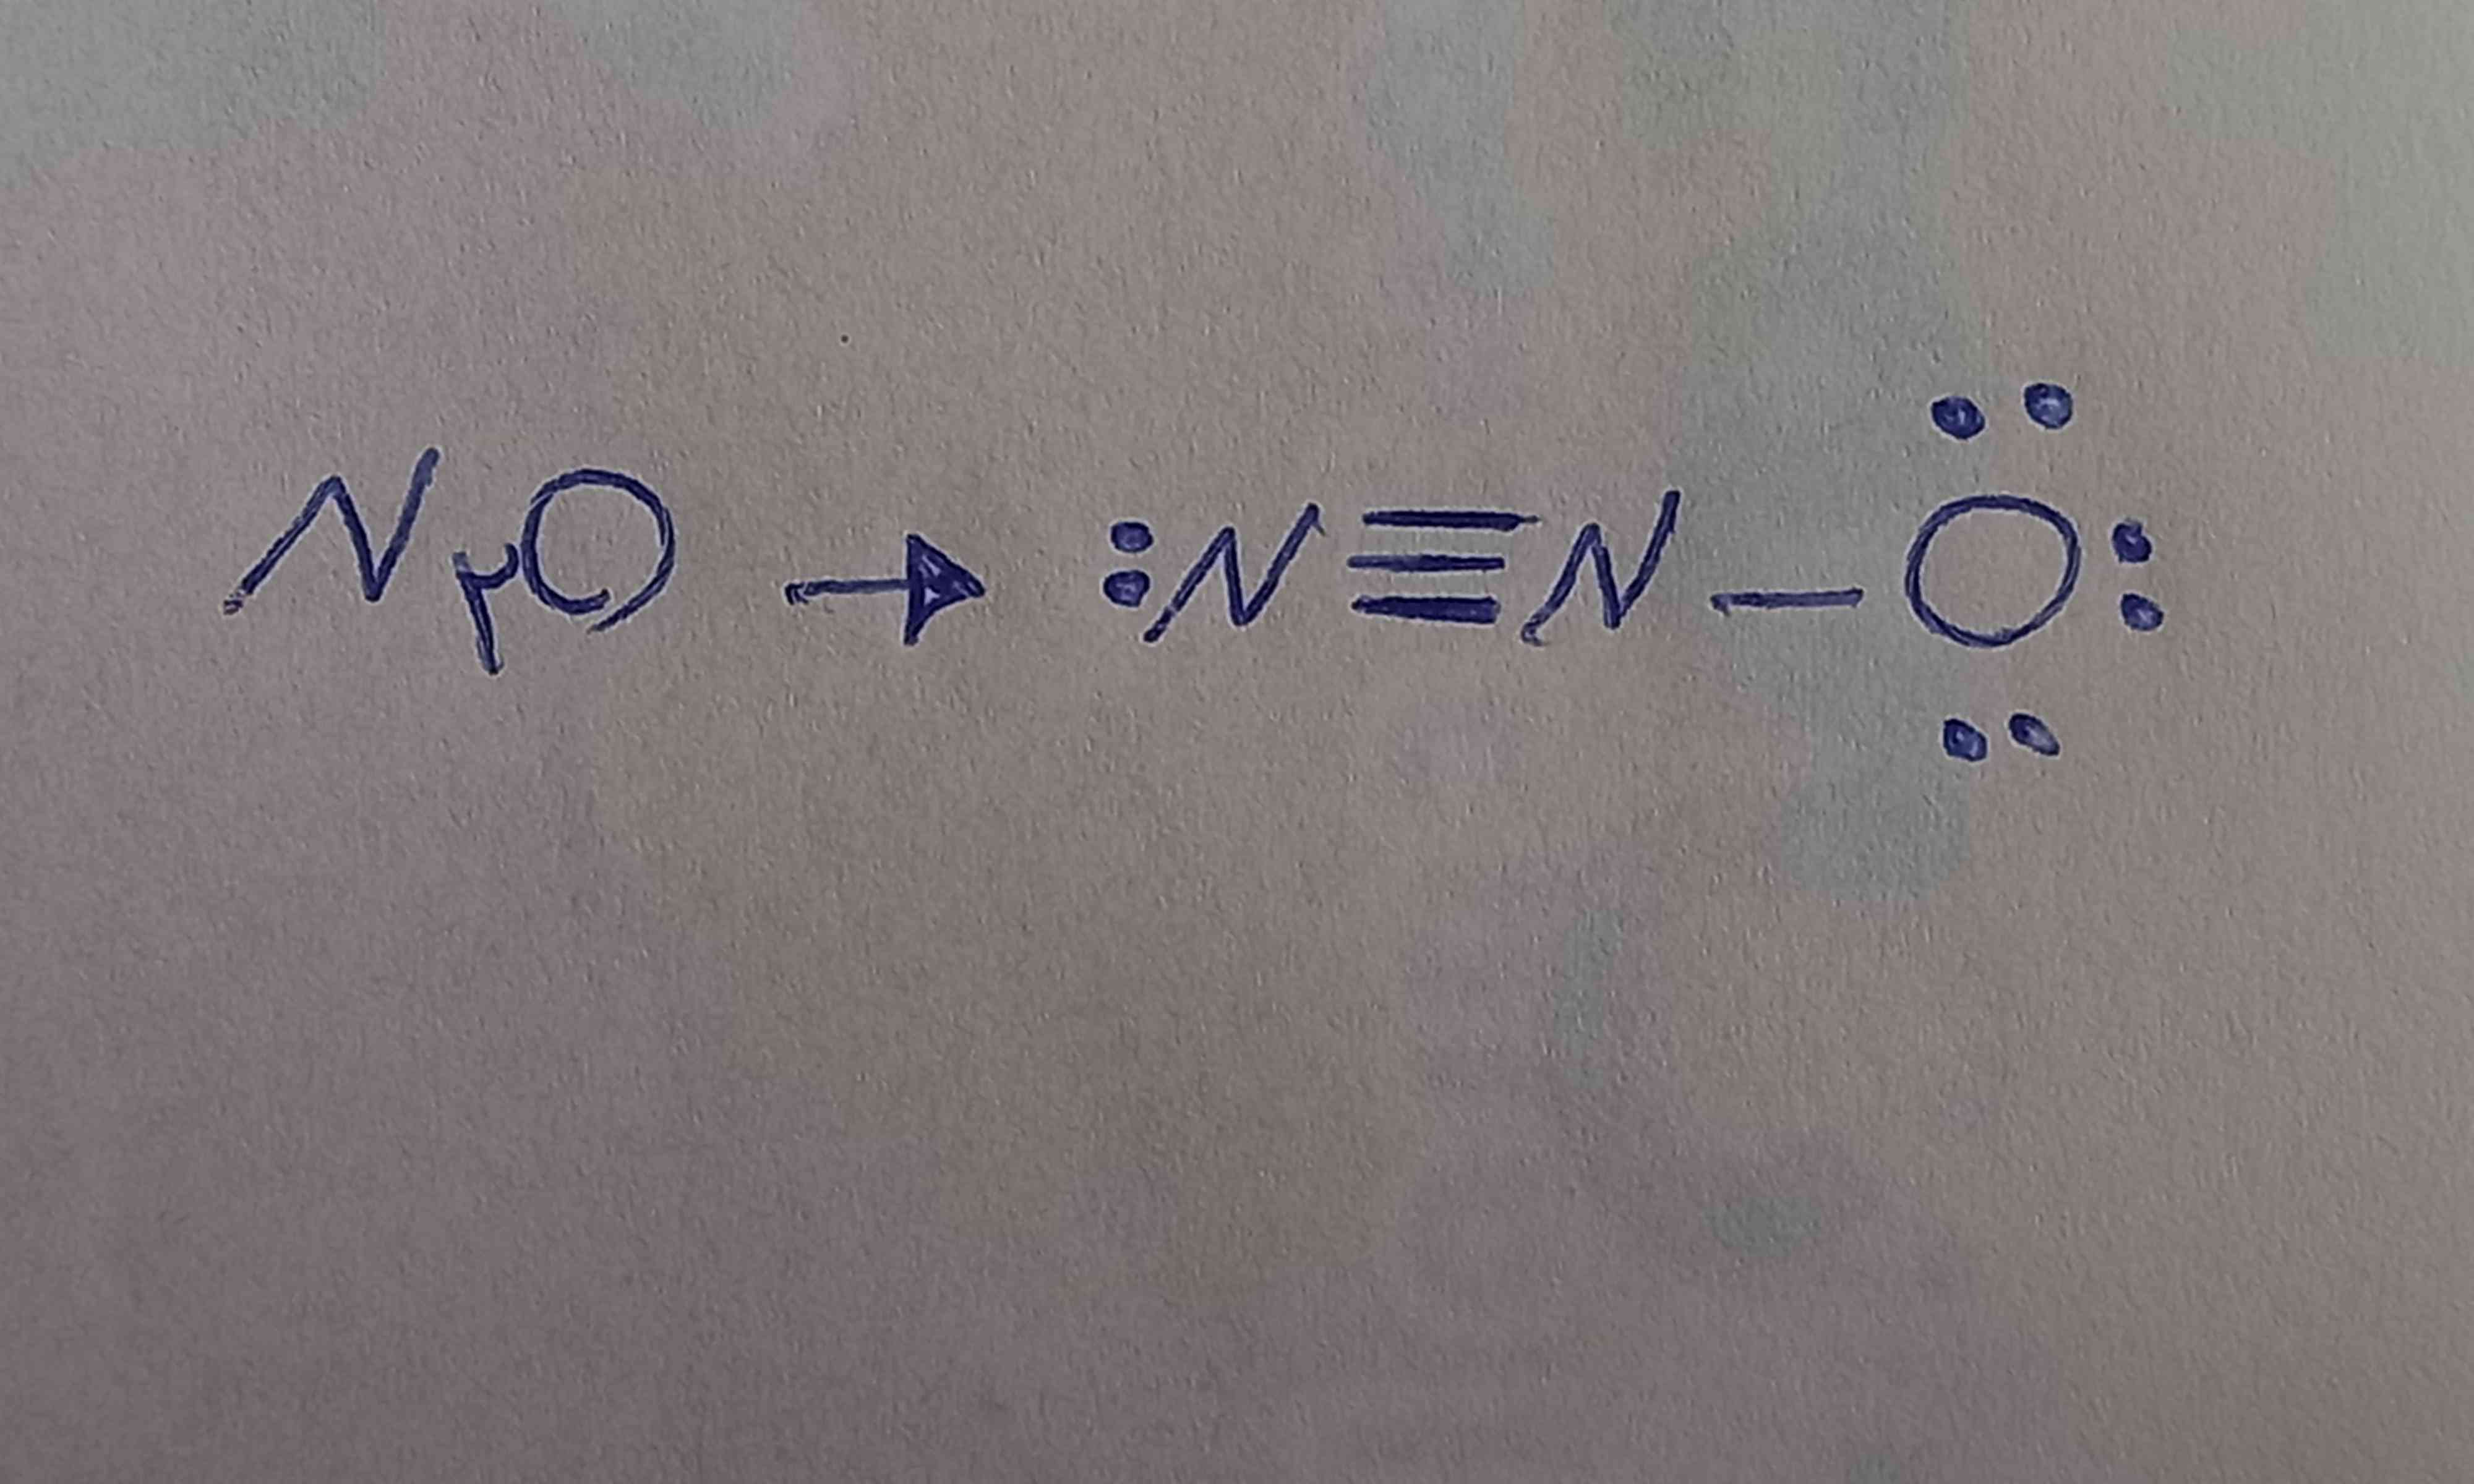 سلام دوستان وقتتون بخیر چرا ساختار دی نیتروژن مونو اکسید اینطوری میشه آخه من با فرمول الکترون های ظرفیت ساختار لوییس رو میخوام بکشم این نمیشه ؟
ممنون میشم توضیح بدید